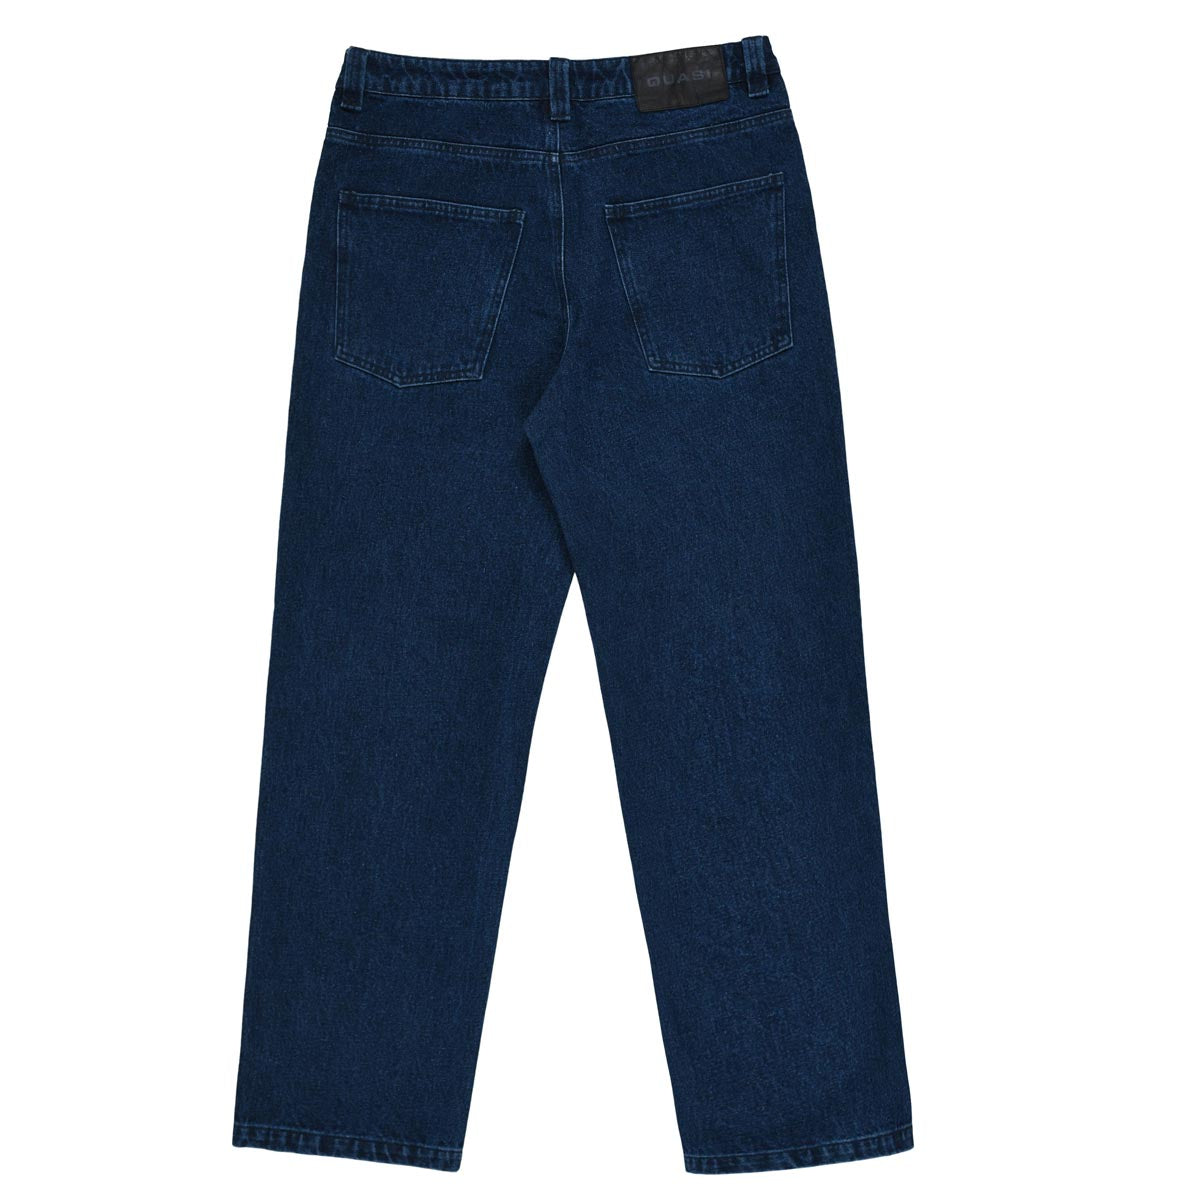 Quasi 102 Jeans - Stonewash image 3